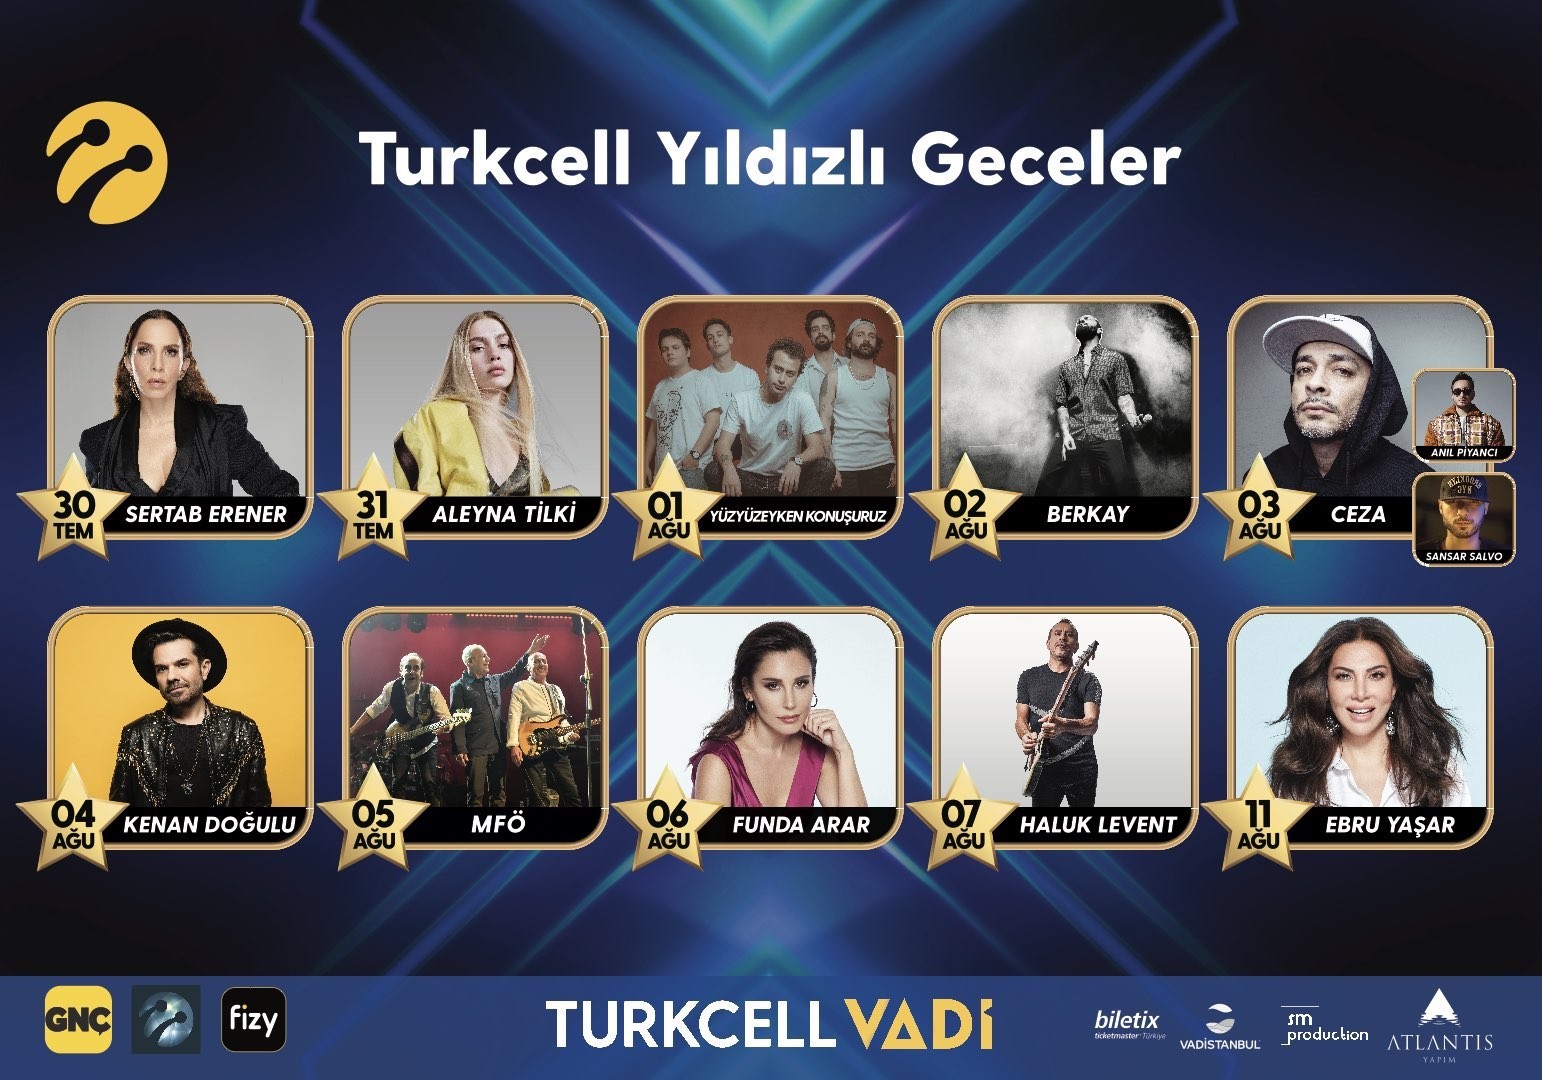 turkcell yildizli geceler konserleri basliyor